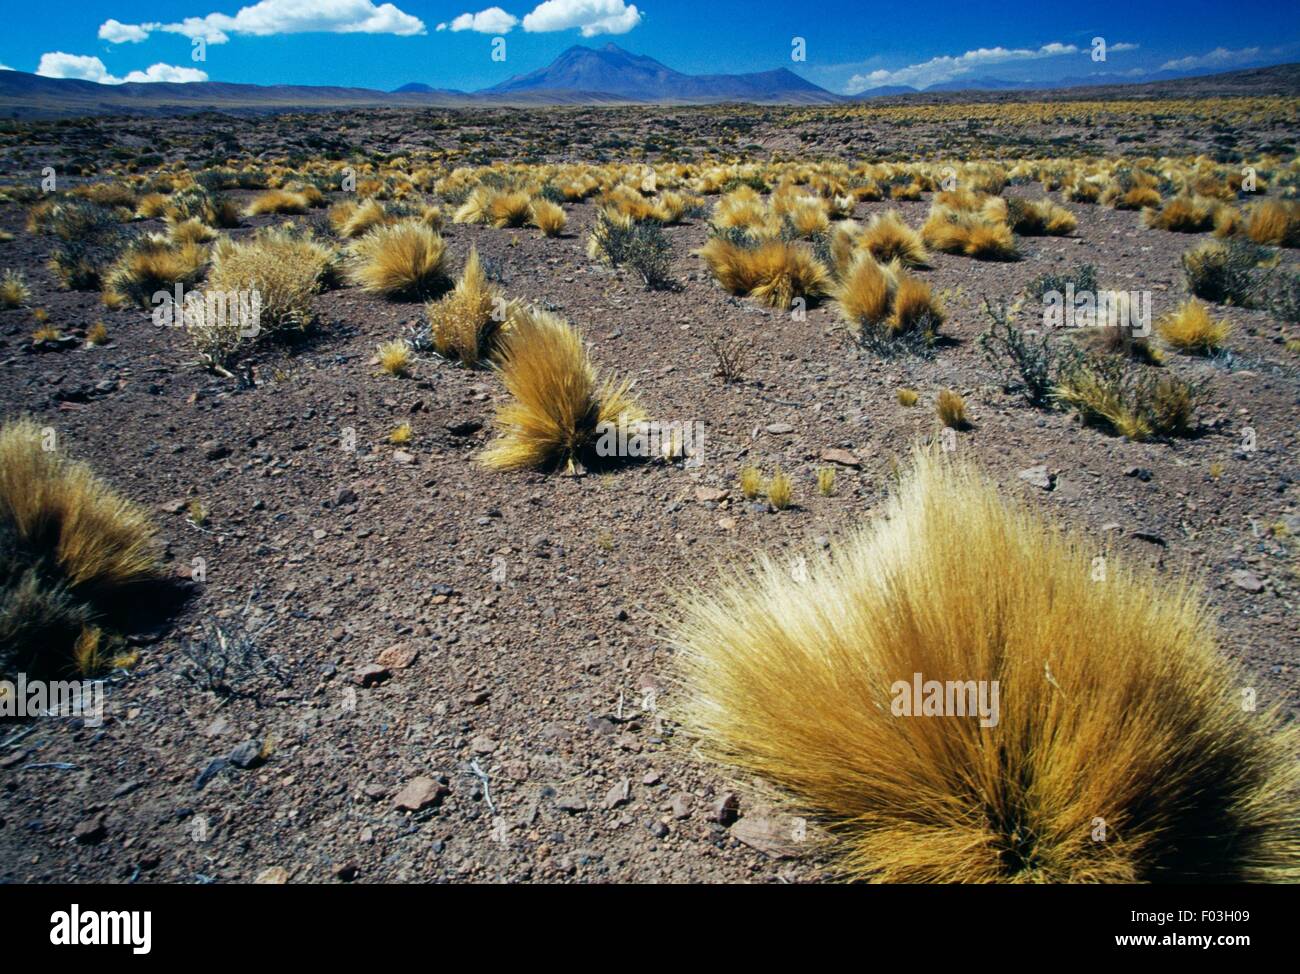 Coiron bushes (Festuca pallescens), with the Cordon de Puntas Negras in the background, Atacama Desert, Antofagasta Region, Chile. Stock Photo